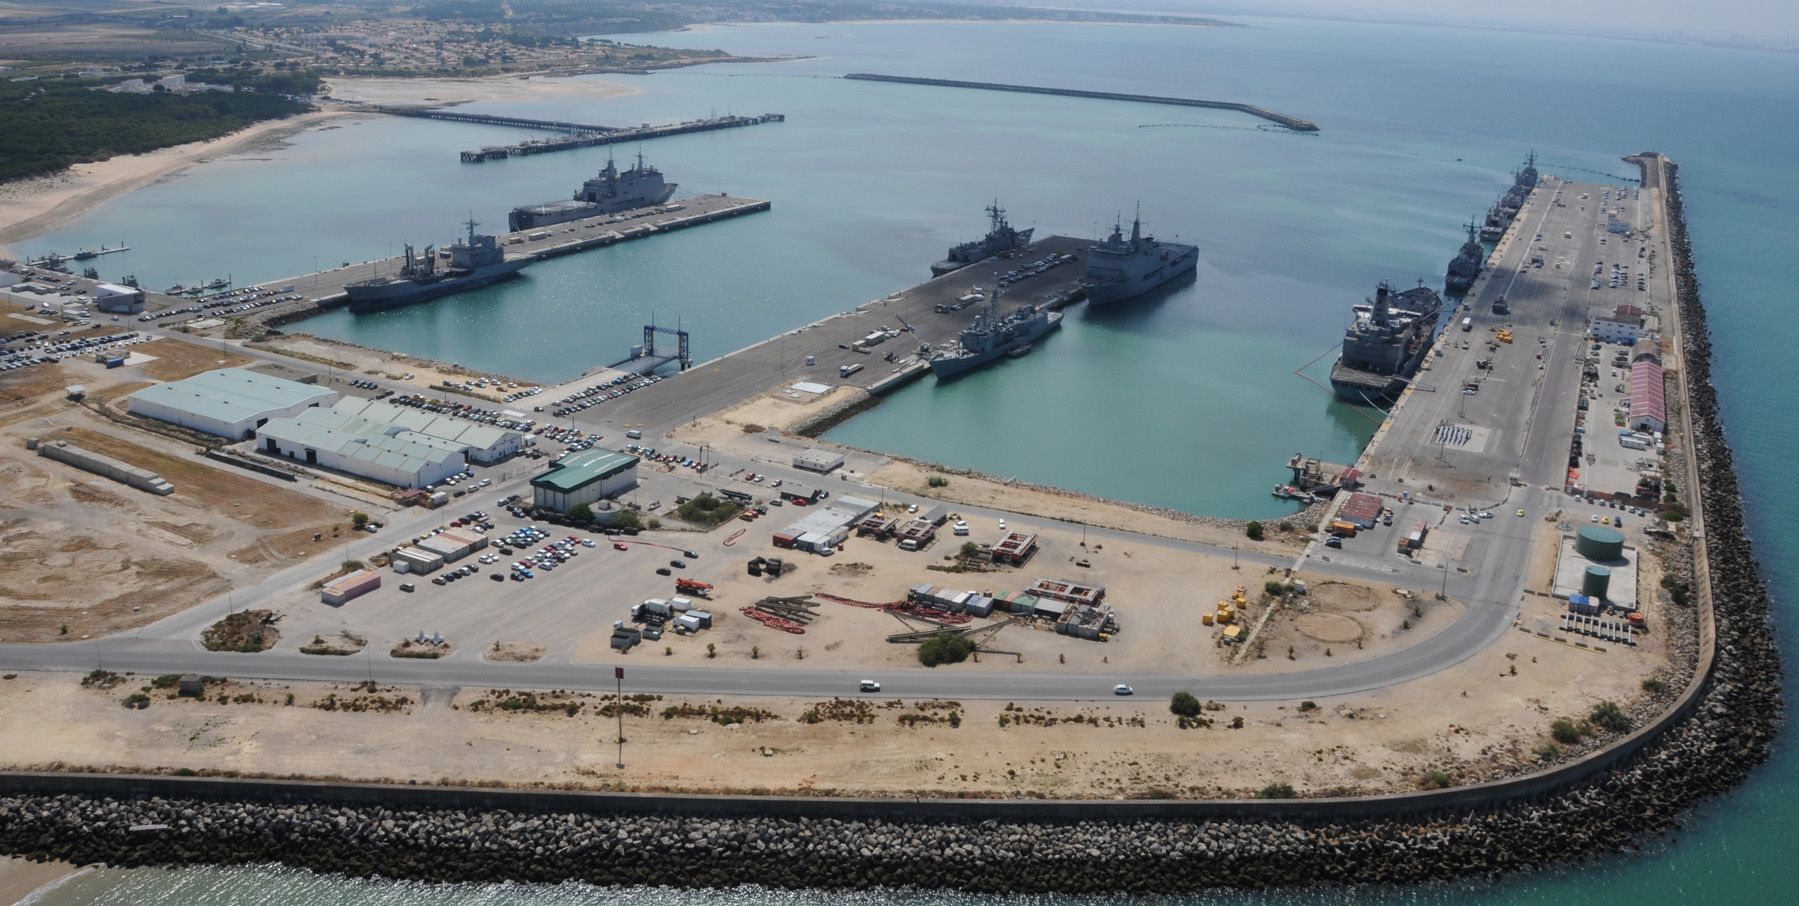 La Base Naval de Rota desde el aire, donde Unidas Podemos no quiere que se amplíe el número de destructores. Foto: comedyisthecure.com